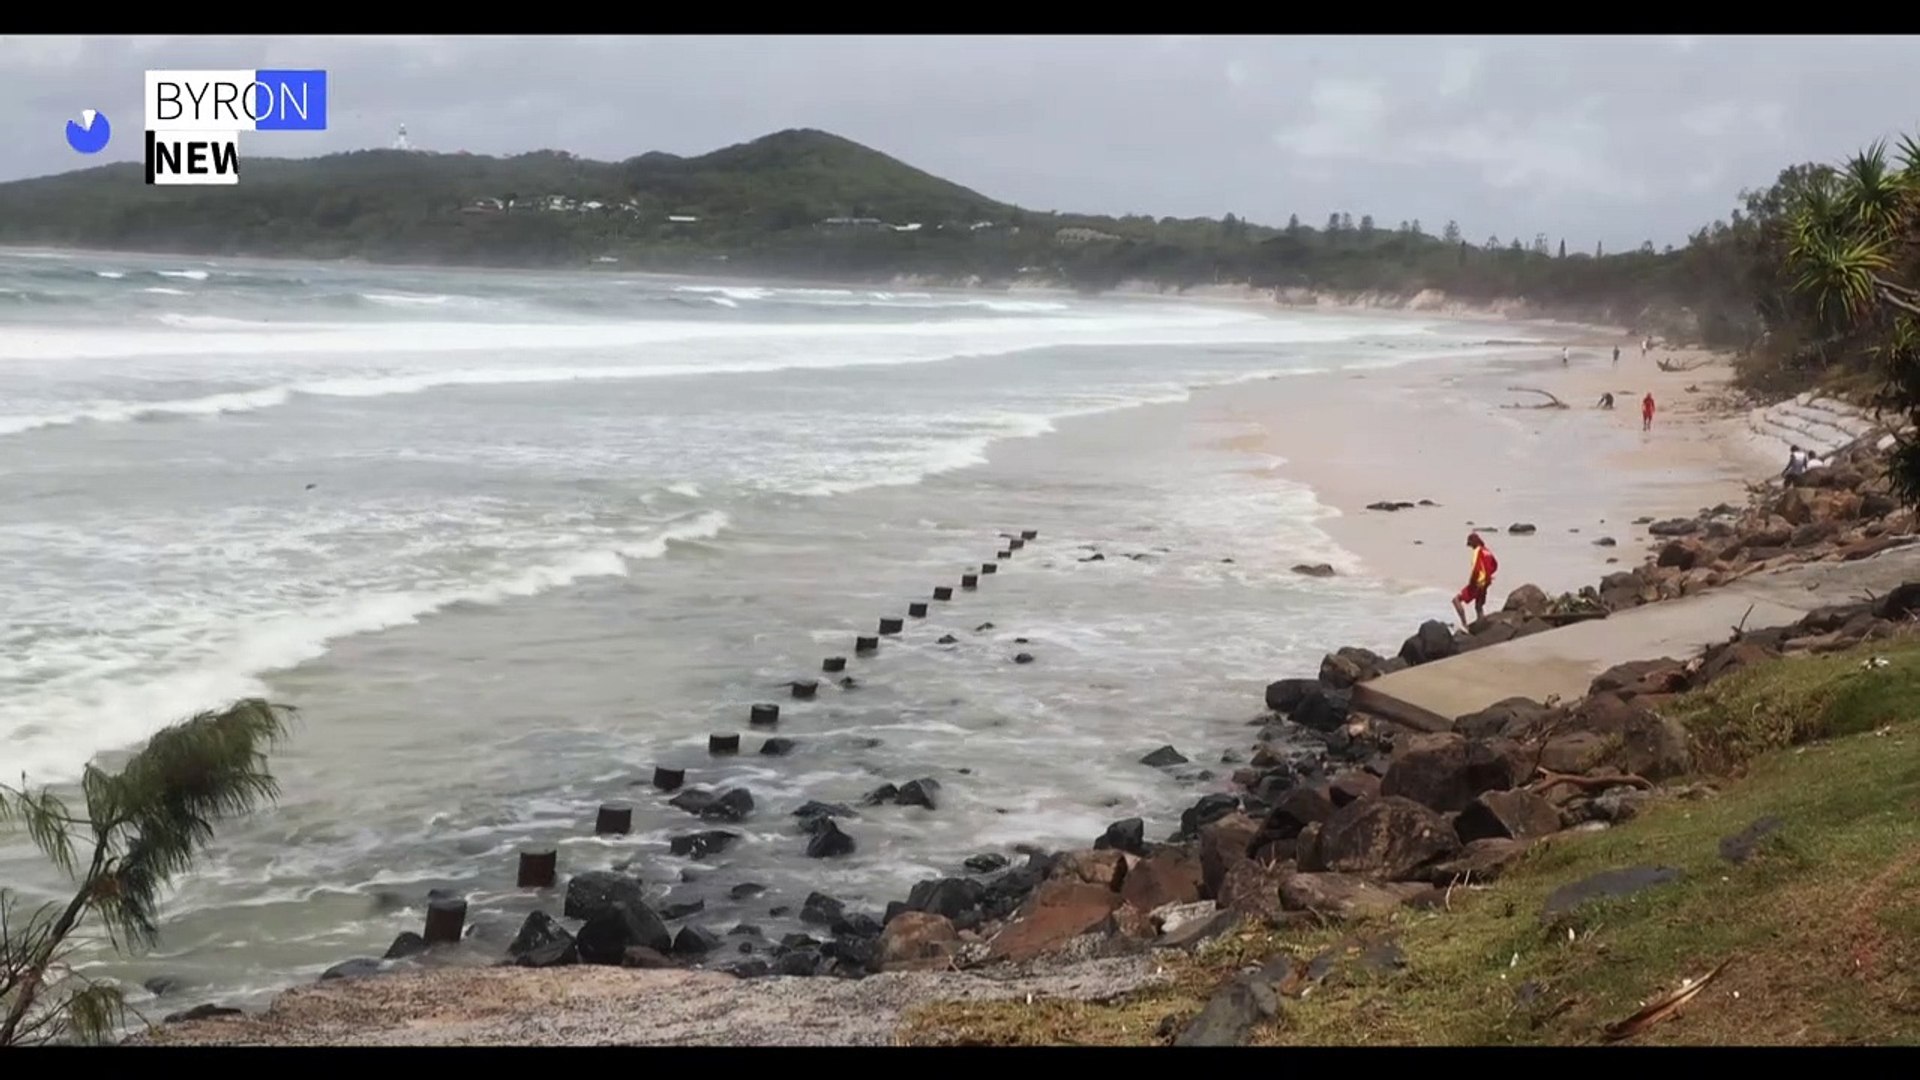 Australia's Byron Bay beach shrinks as sand disappears